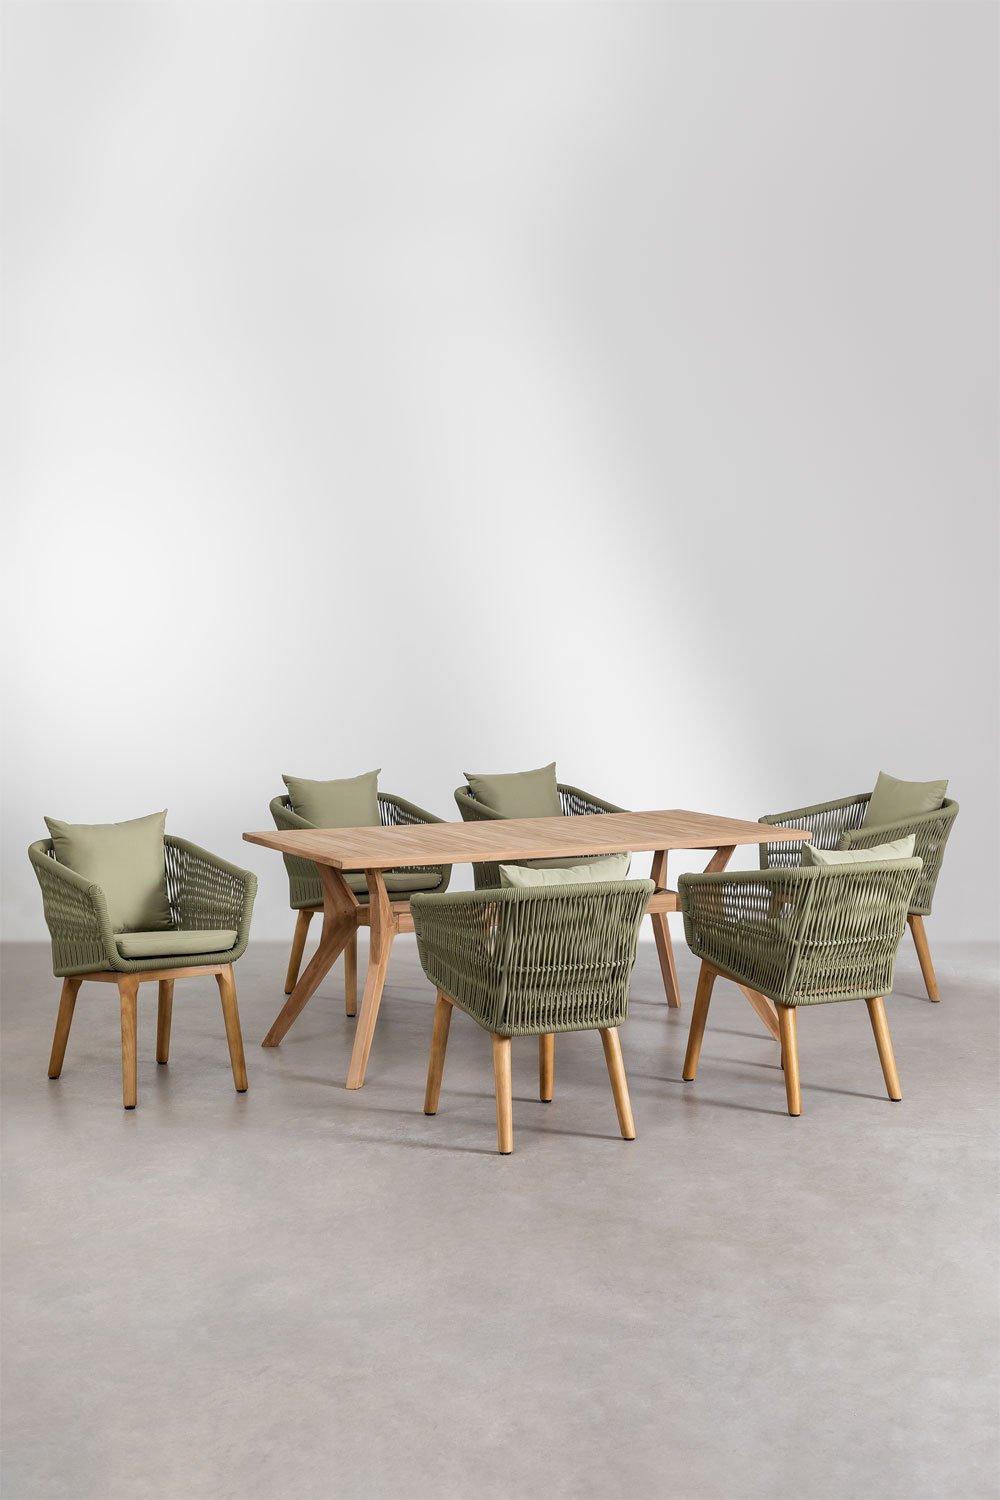 Yolen rechthoekige teakhouten tafelset (180x90 cm) en 6 Barker eetkamerstoelen, galerij beeld 1